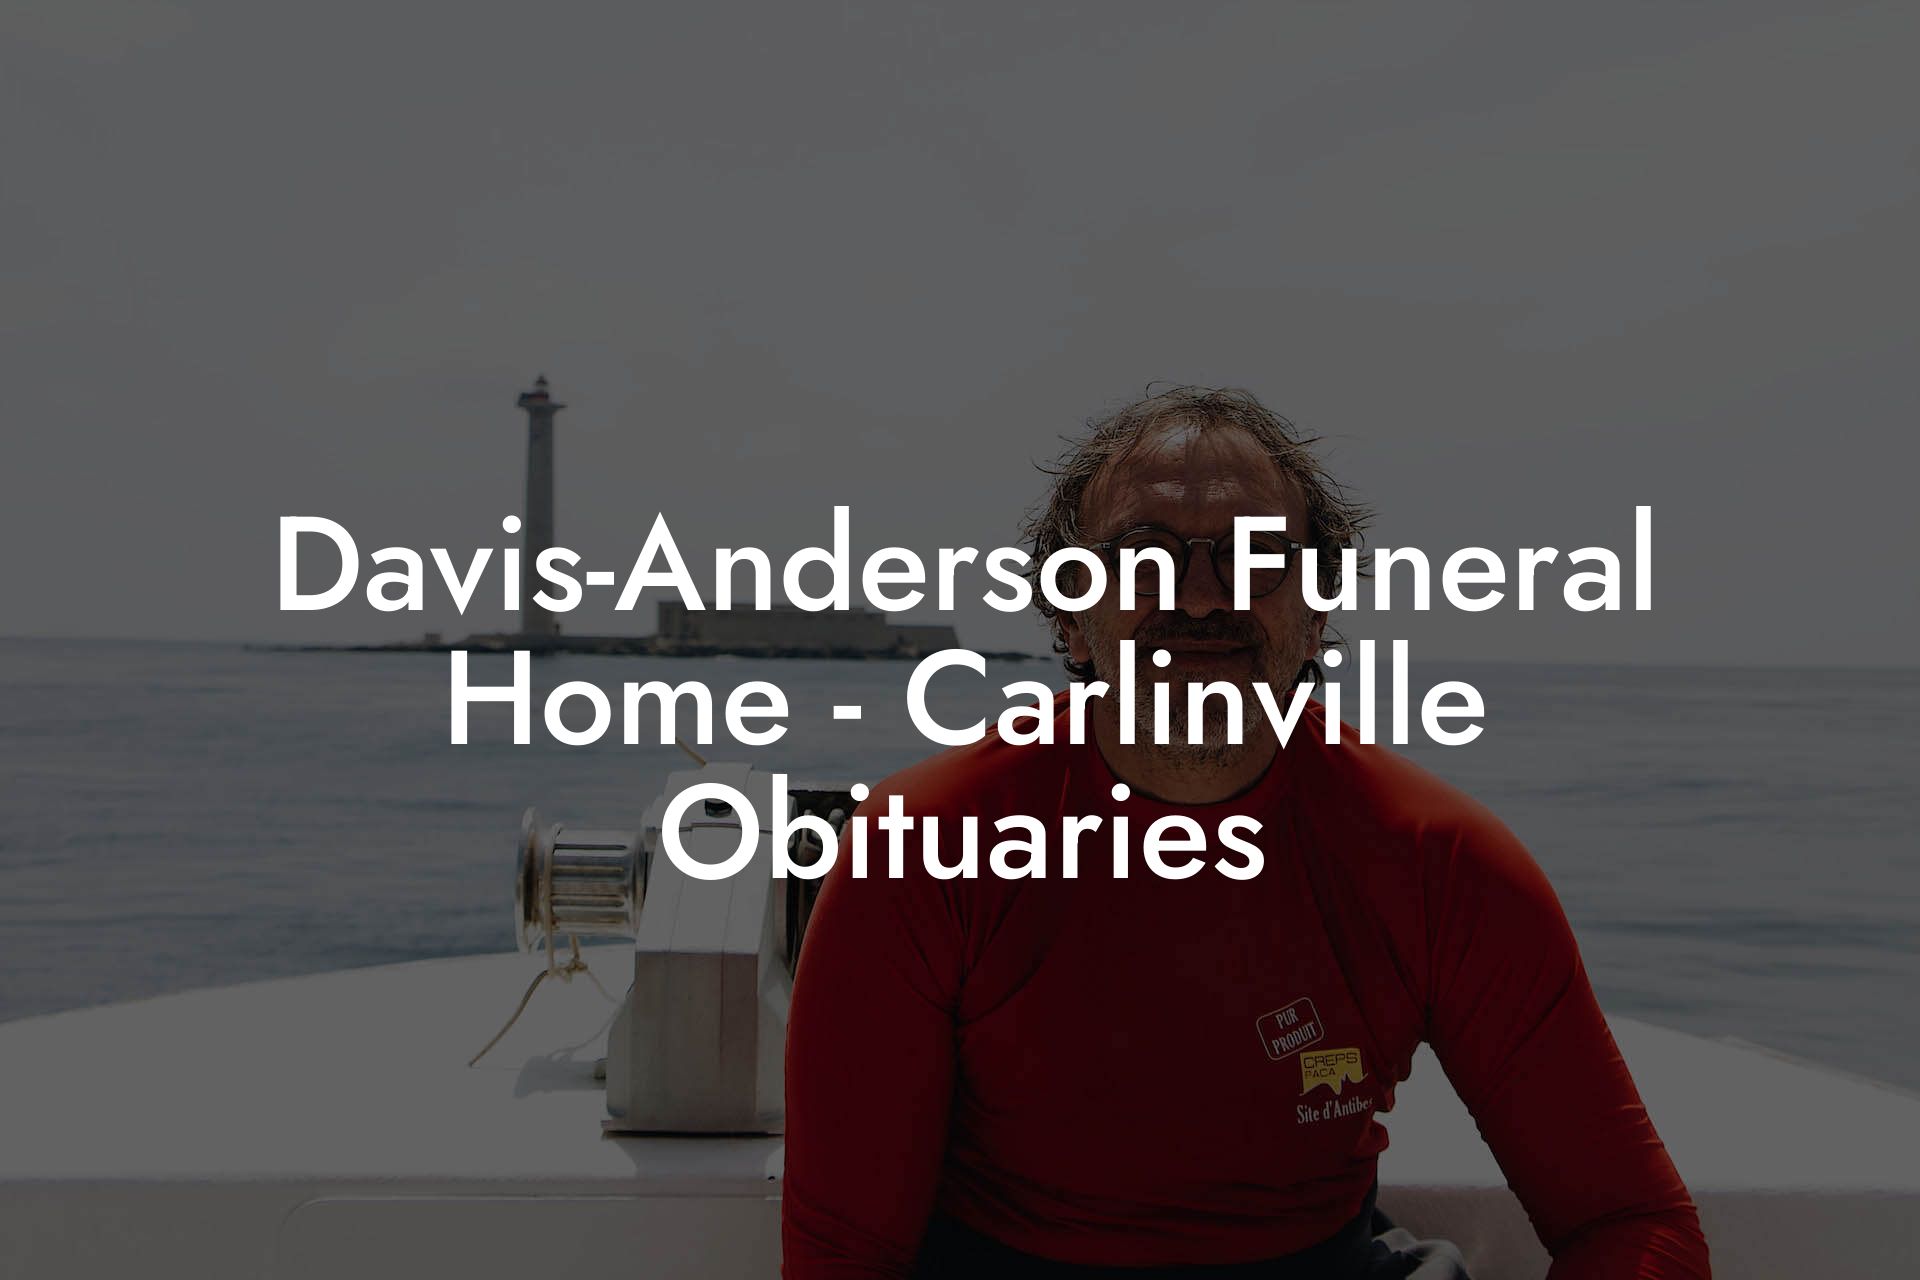 Davis-Anderson Funeral Home - Carlinville Obituaries